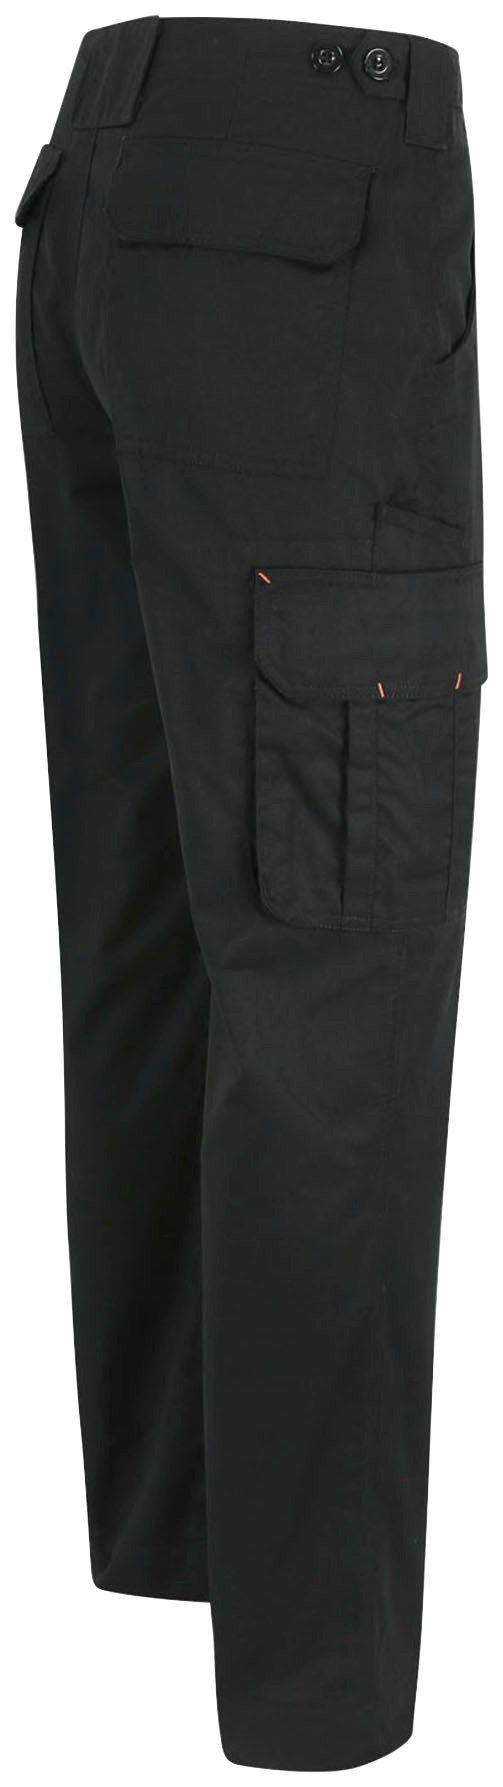 Taschen, Thor Wasserabweisend, leicht, Herock Bund, Hose 7 einstellbarer Farben Arbeitshose viele schwarz